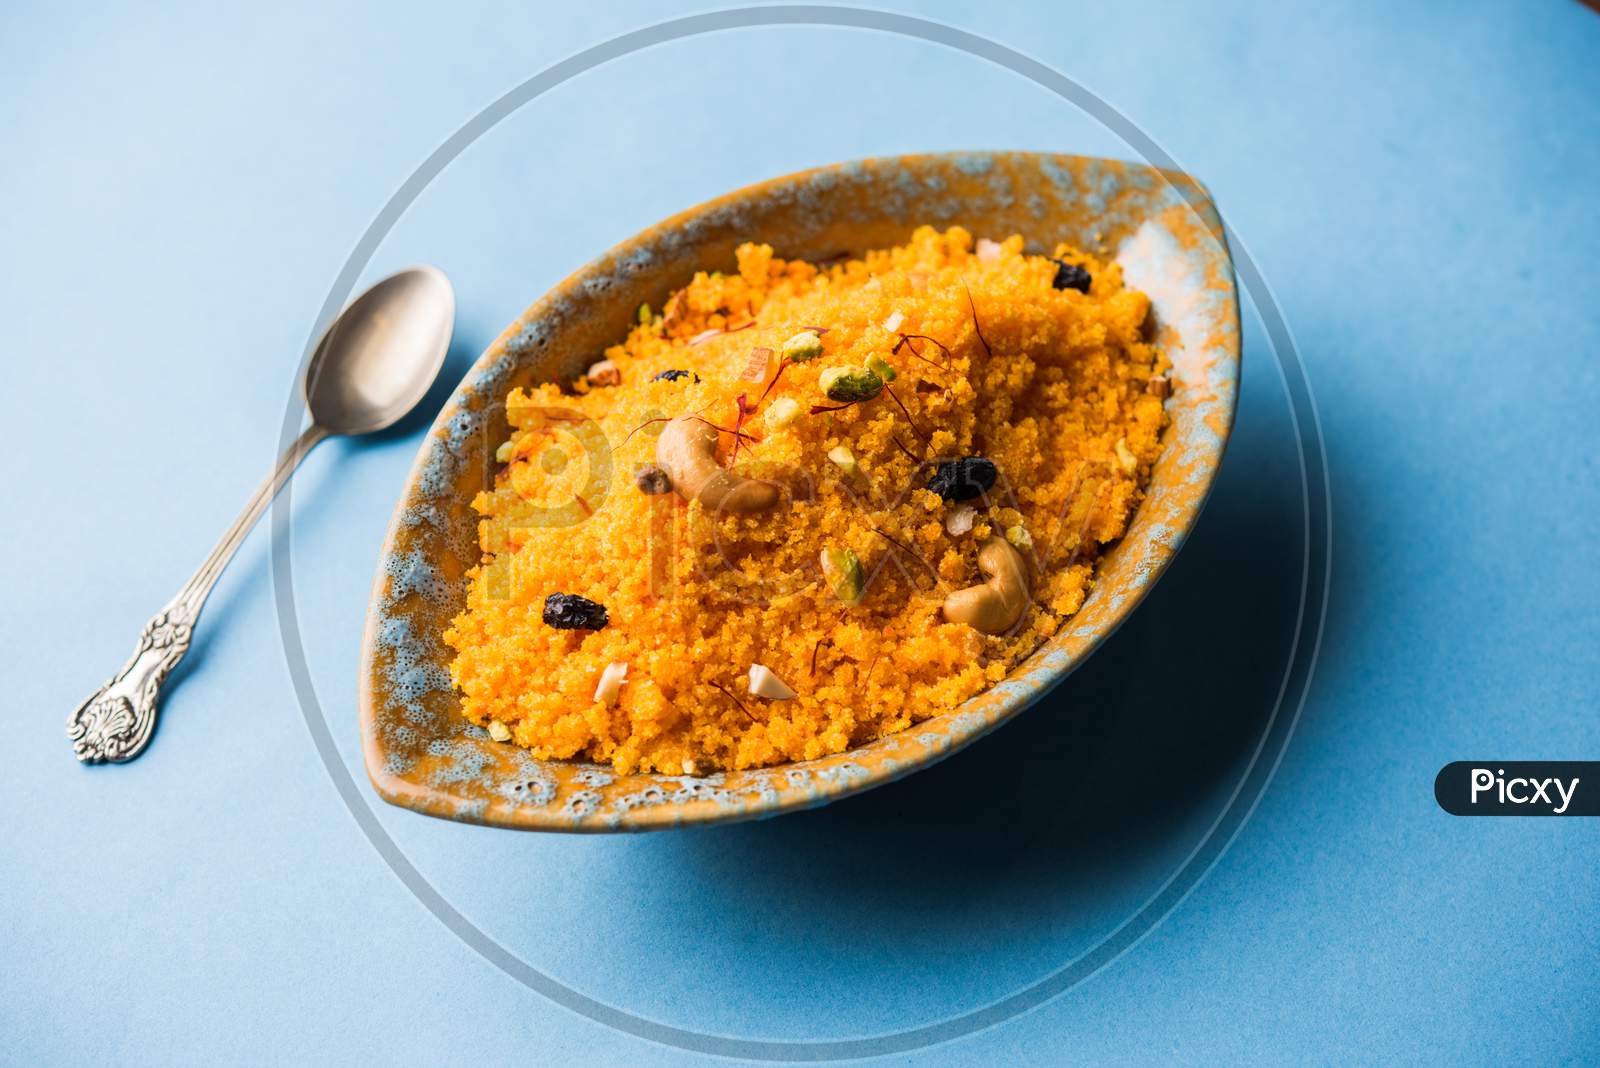 Badaam kesar shira / Sheera or almond saffron halwa